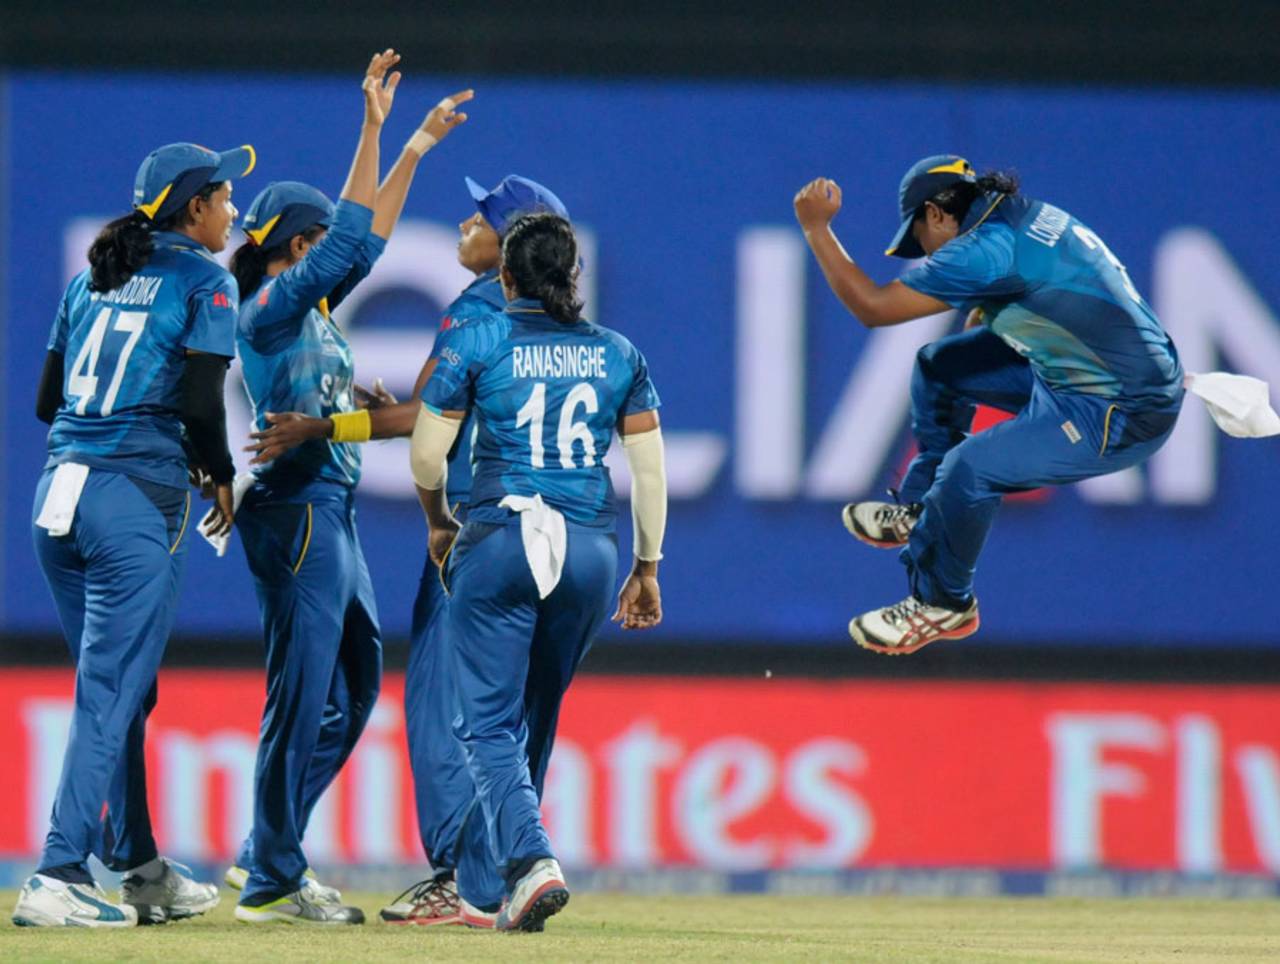 Sri Lankan fielders celebrate the fall of an Indian wicket, India v Sri Lanka, Women's World Twenty20 2014, Group B, Sylhet, March 24, 2014